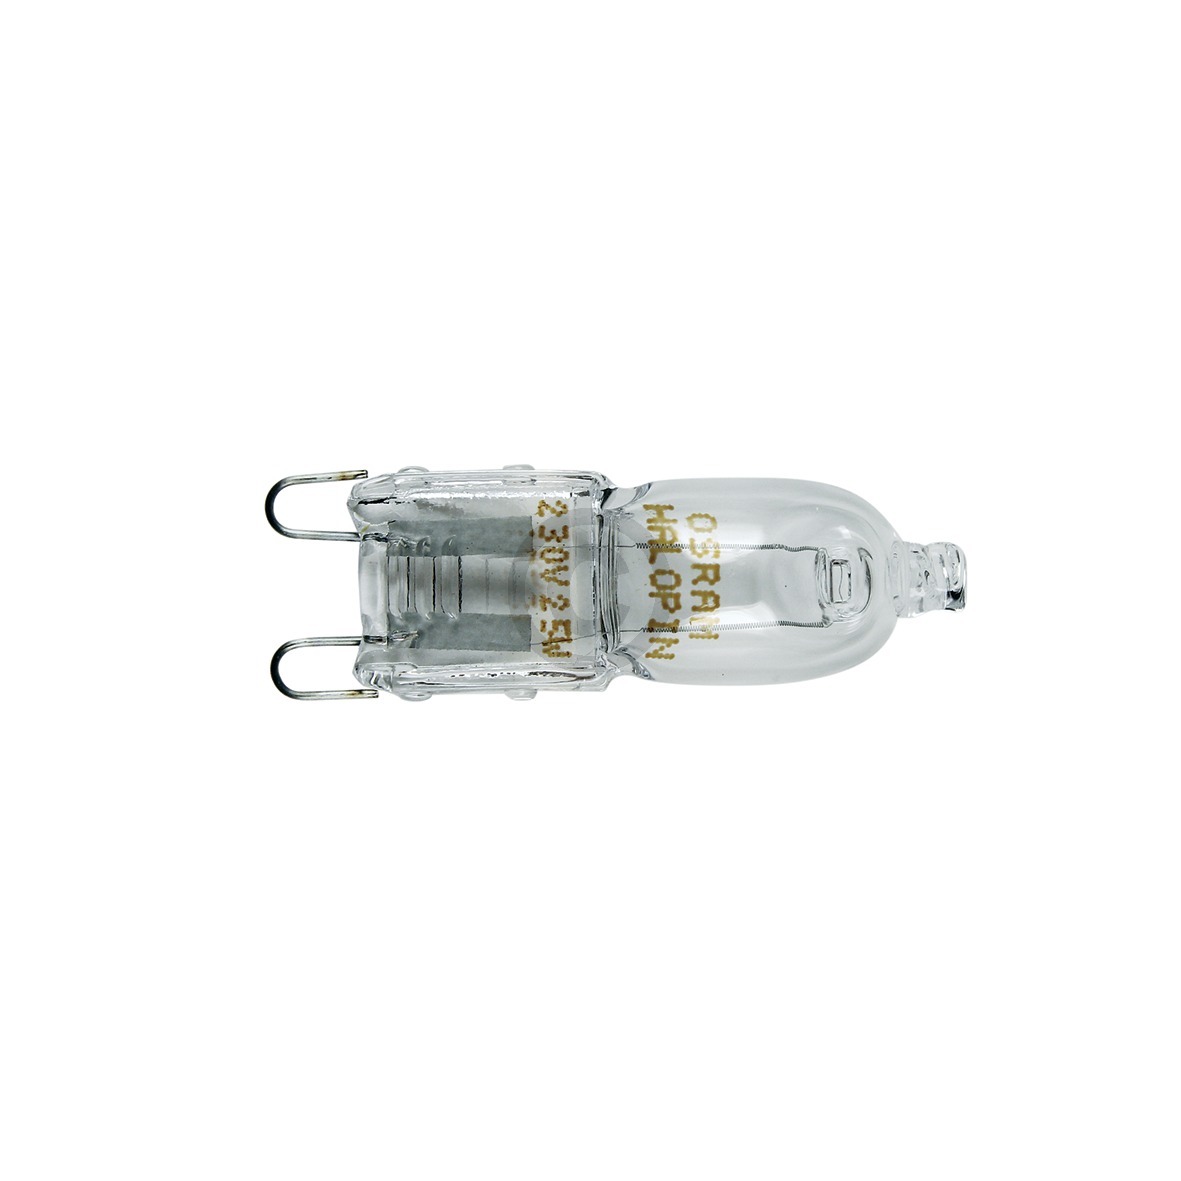 Halogenlampe G9 25W Miele 7006820 für Backofen Dampfgarer